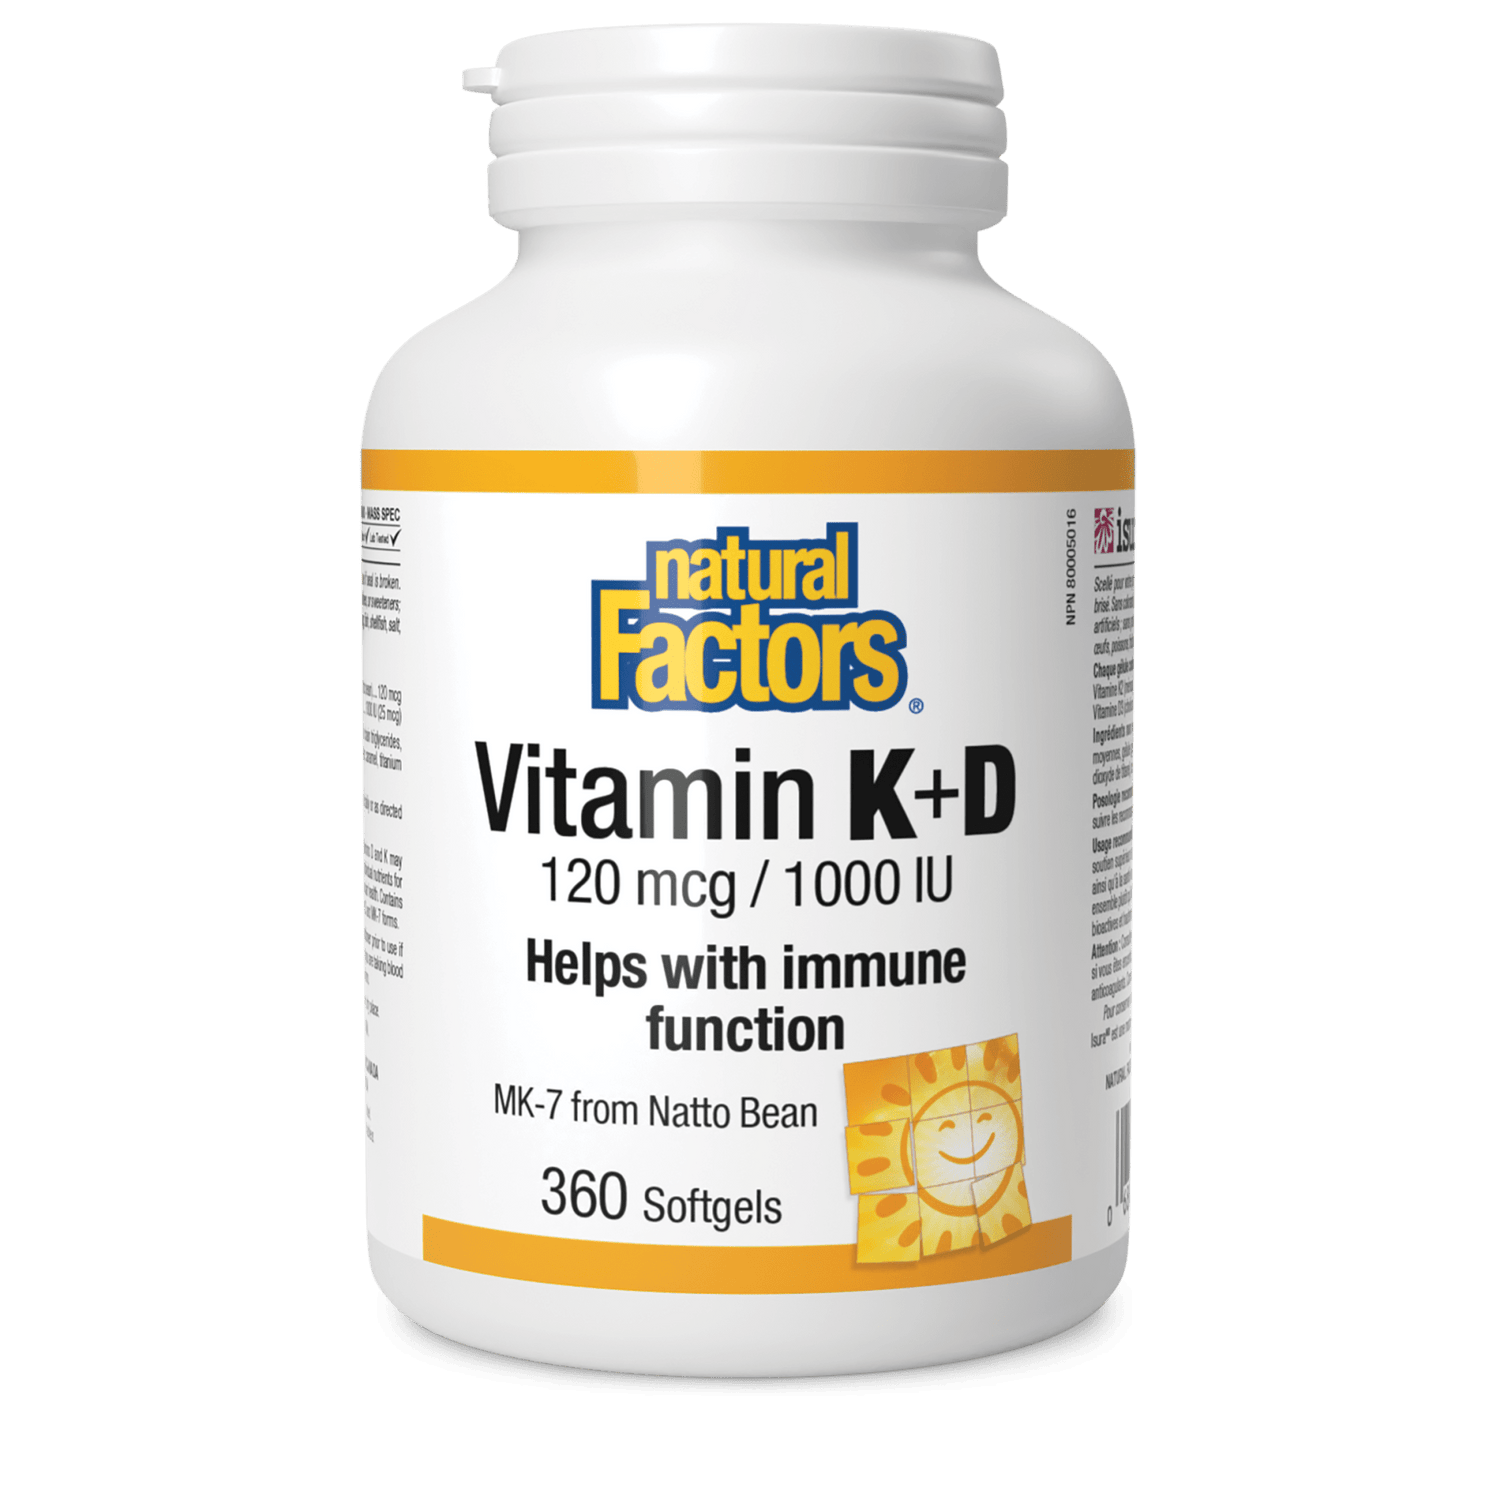 Vitamin K+D 120 mcg/1000 IU, Natural Factors|v|image|1056